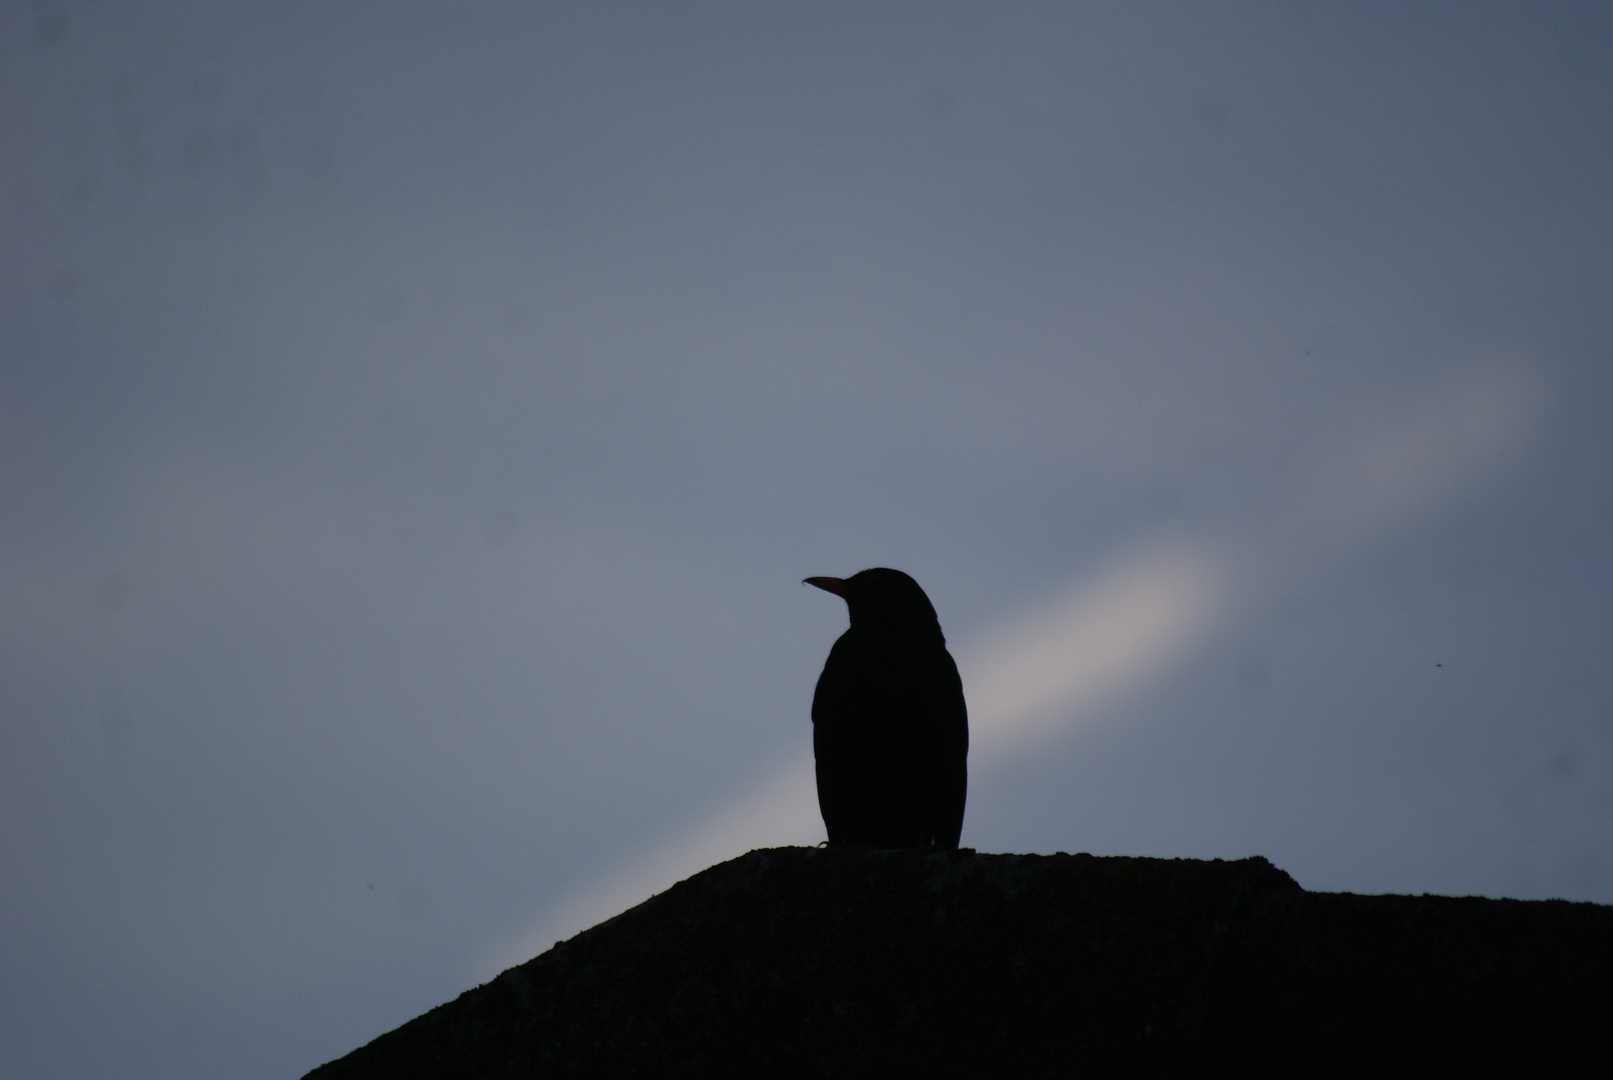 E.A. Poe - The Raven